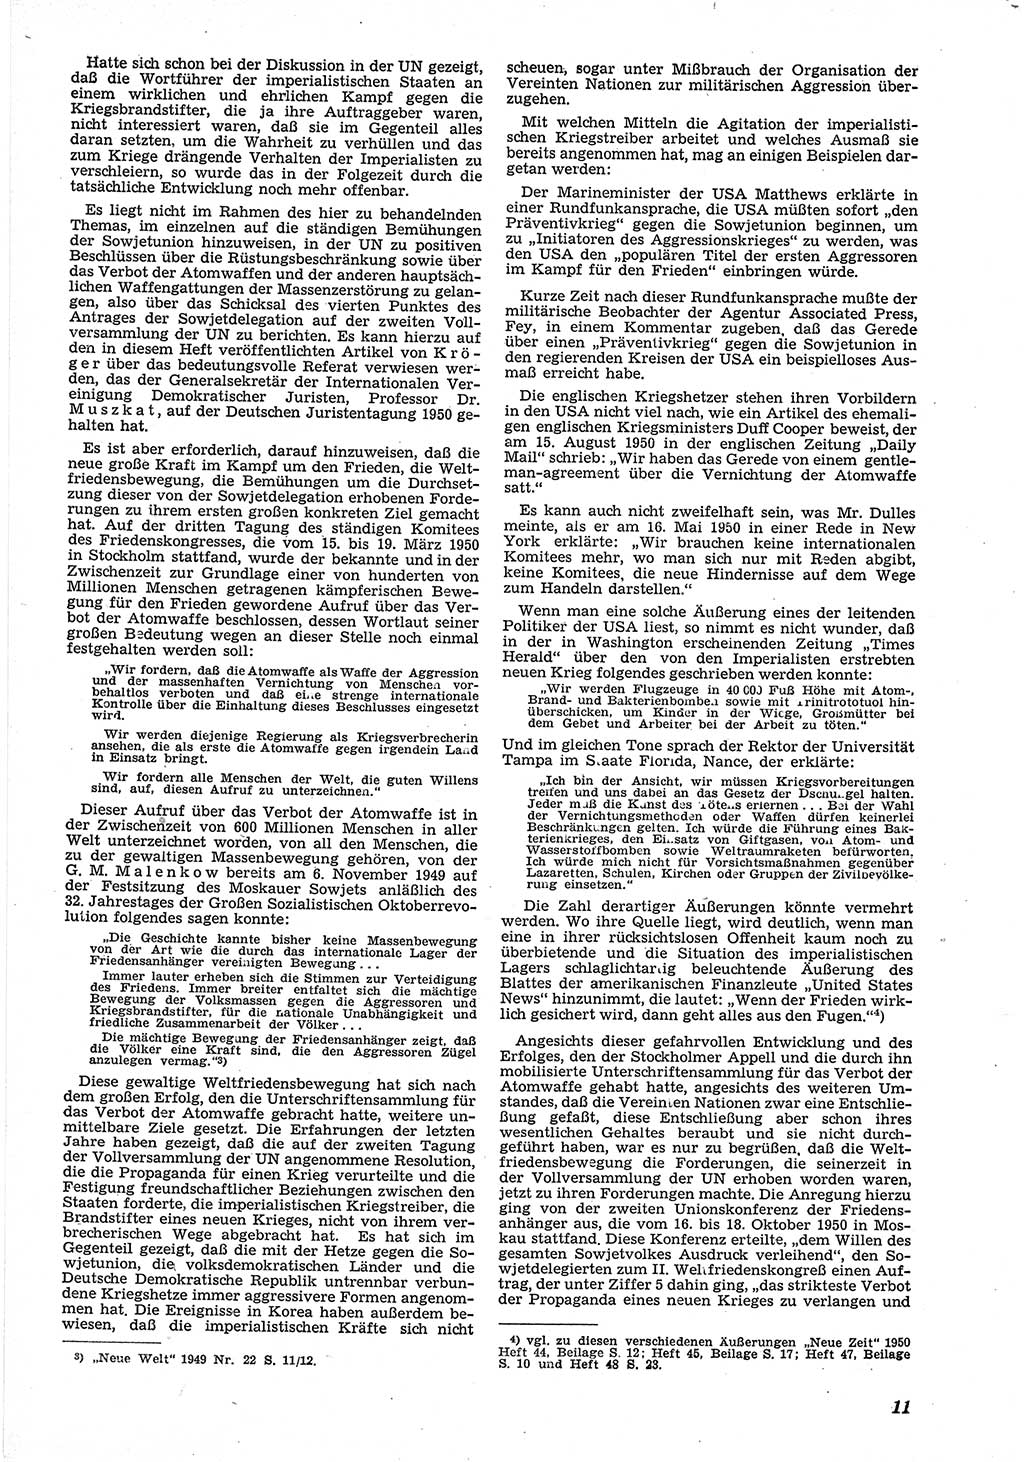 Neue Justiz (NJ), Zeitschrift für Recht und Rechtswissenschaft [Deutsche Demokratische Republik (DDR)], 5. Jahrgang 1951, Seite 11 (NJ DDR 1951, S. 11)